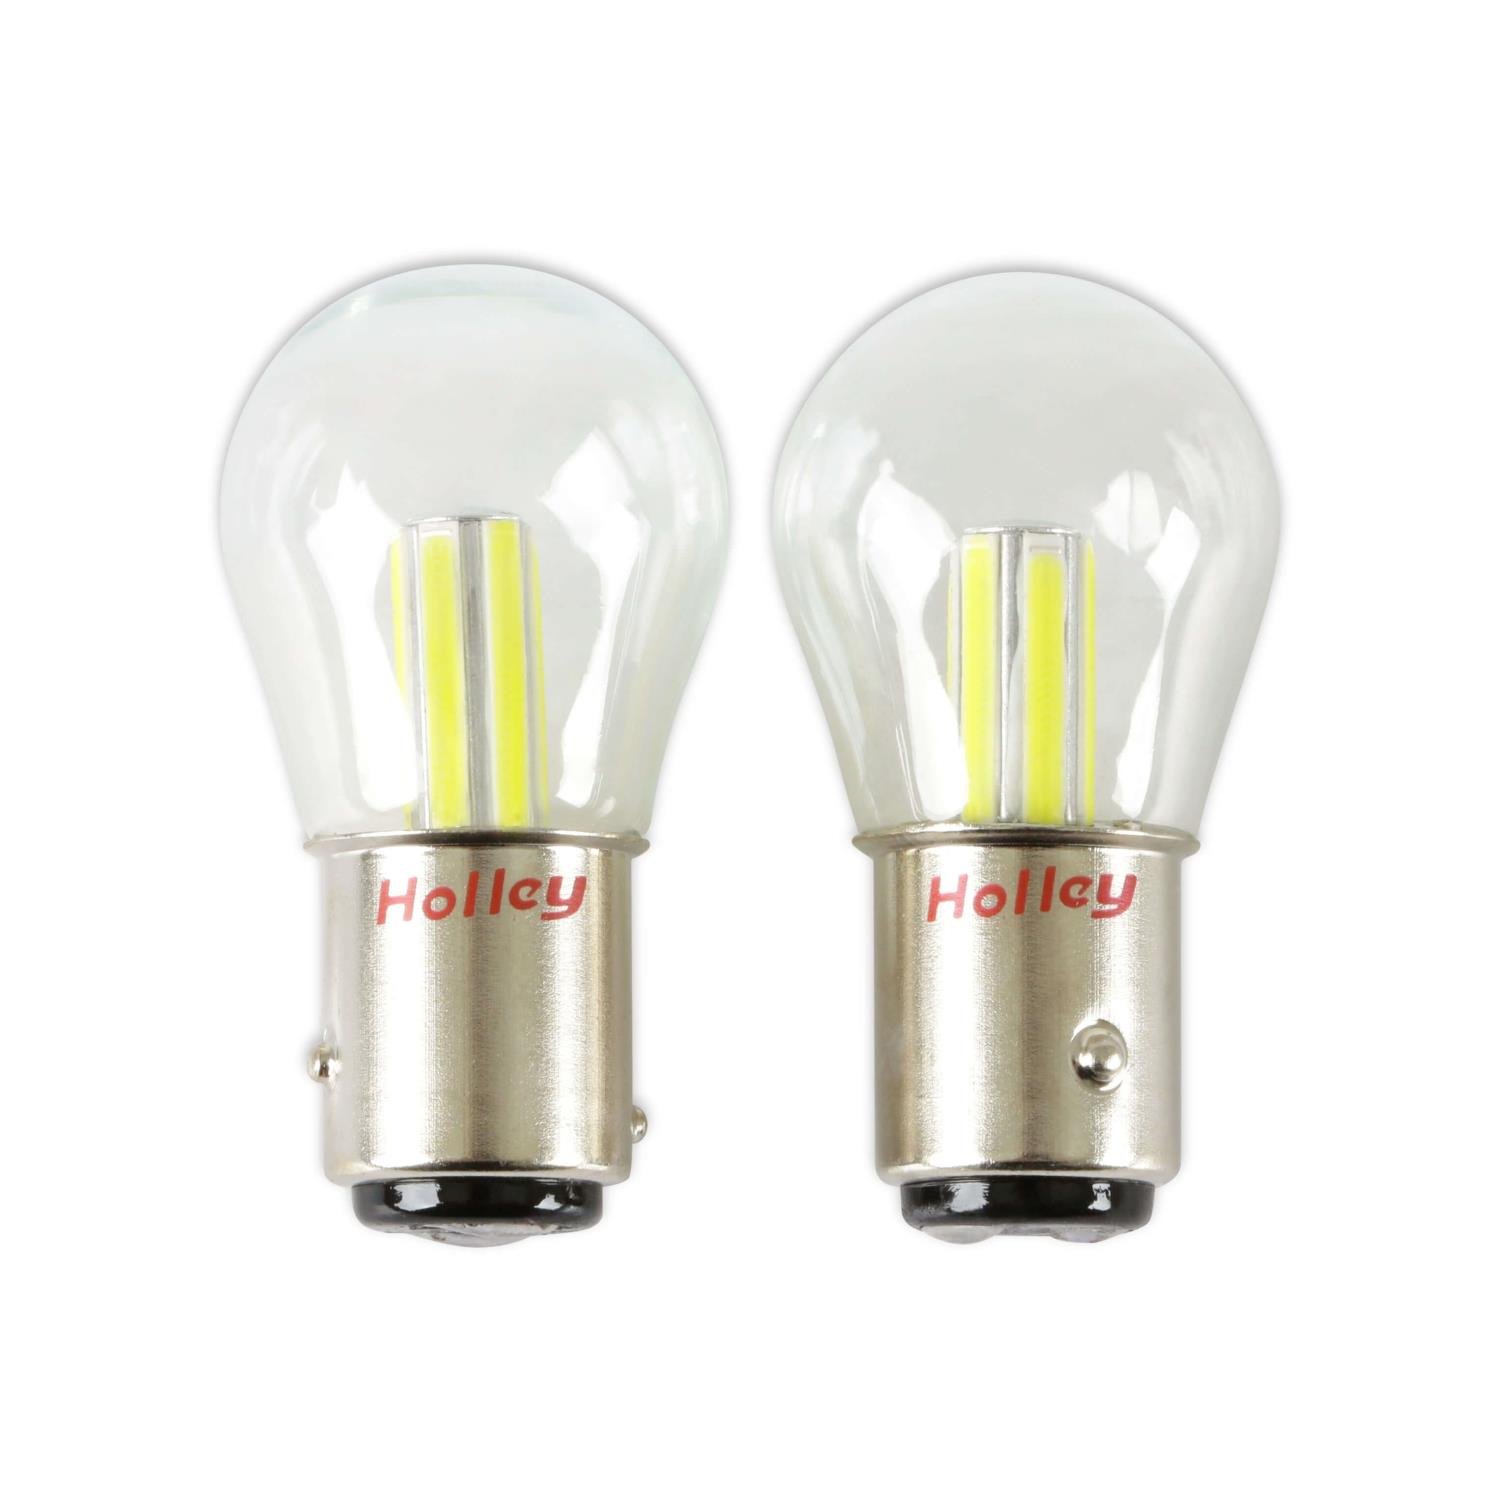 RetroBright LED 1157 Turn Signal / Parking Light Bulbs [Modern White]